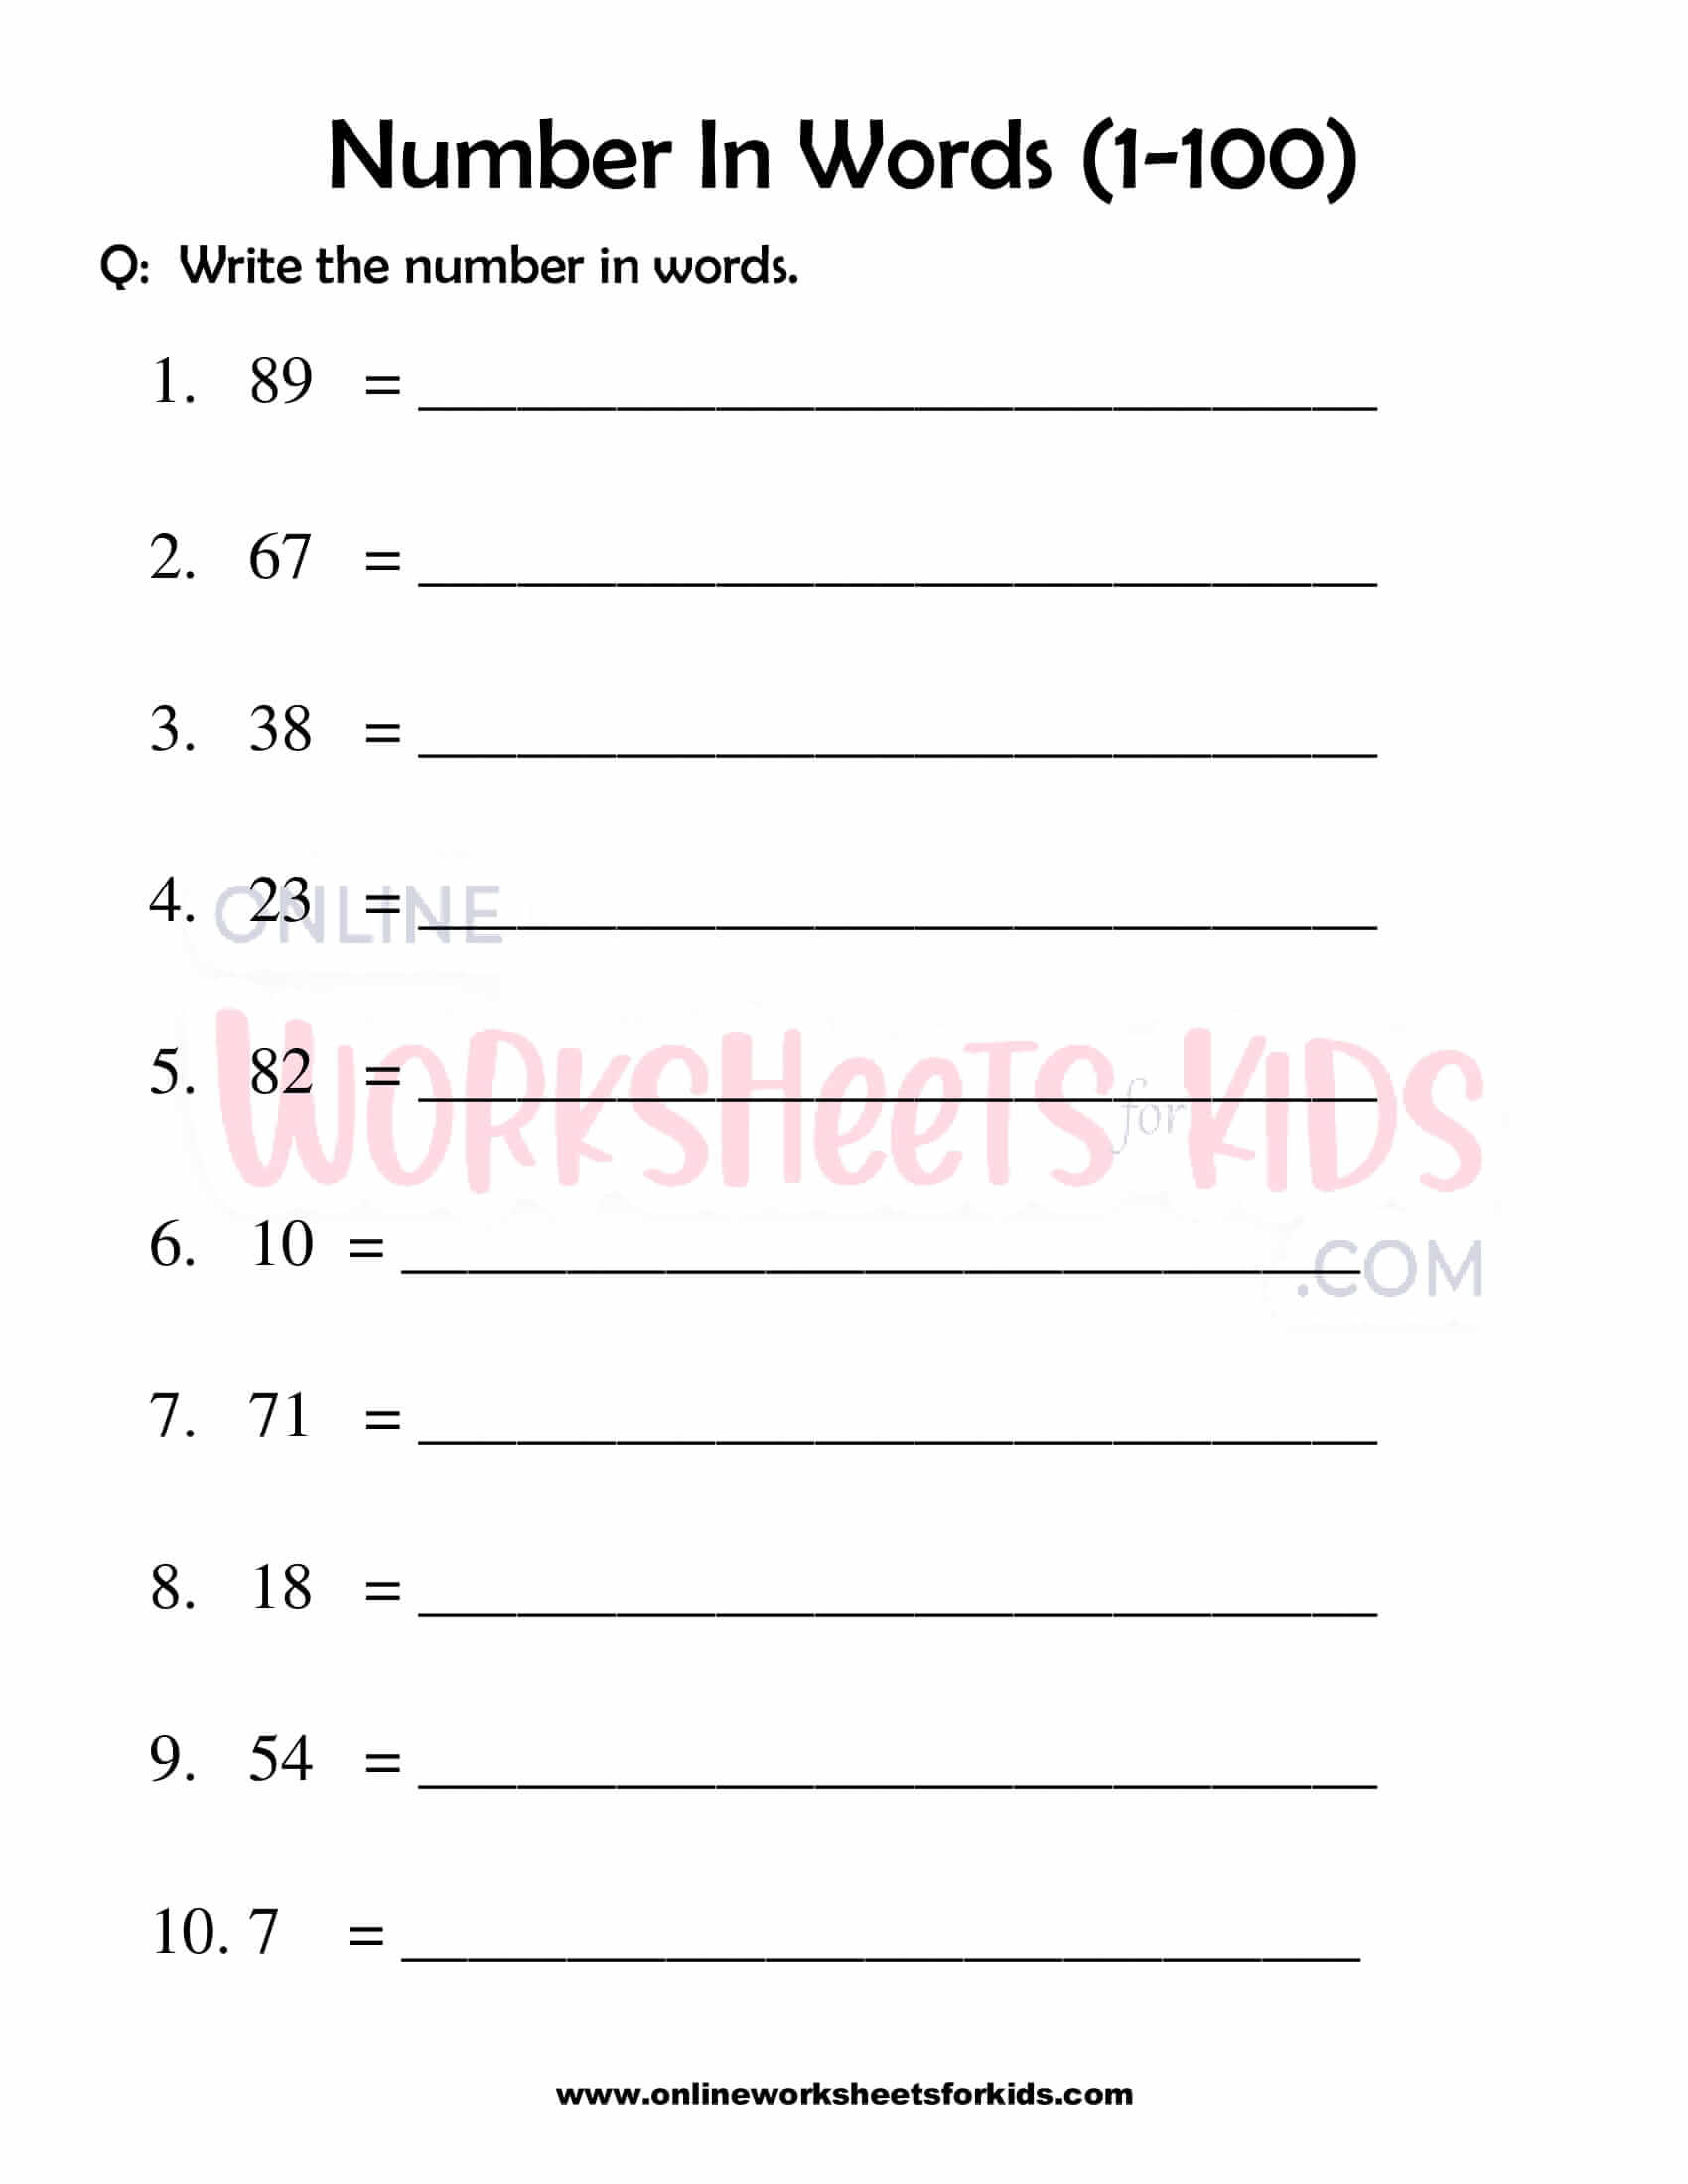 download free number words worksheet 1 100 for grade 1